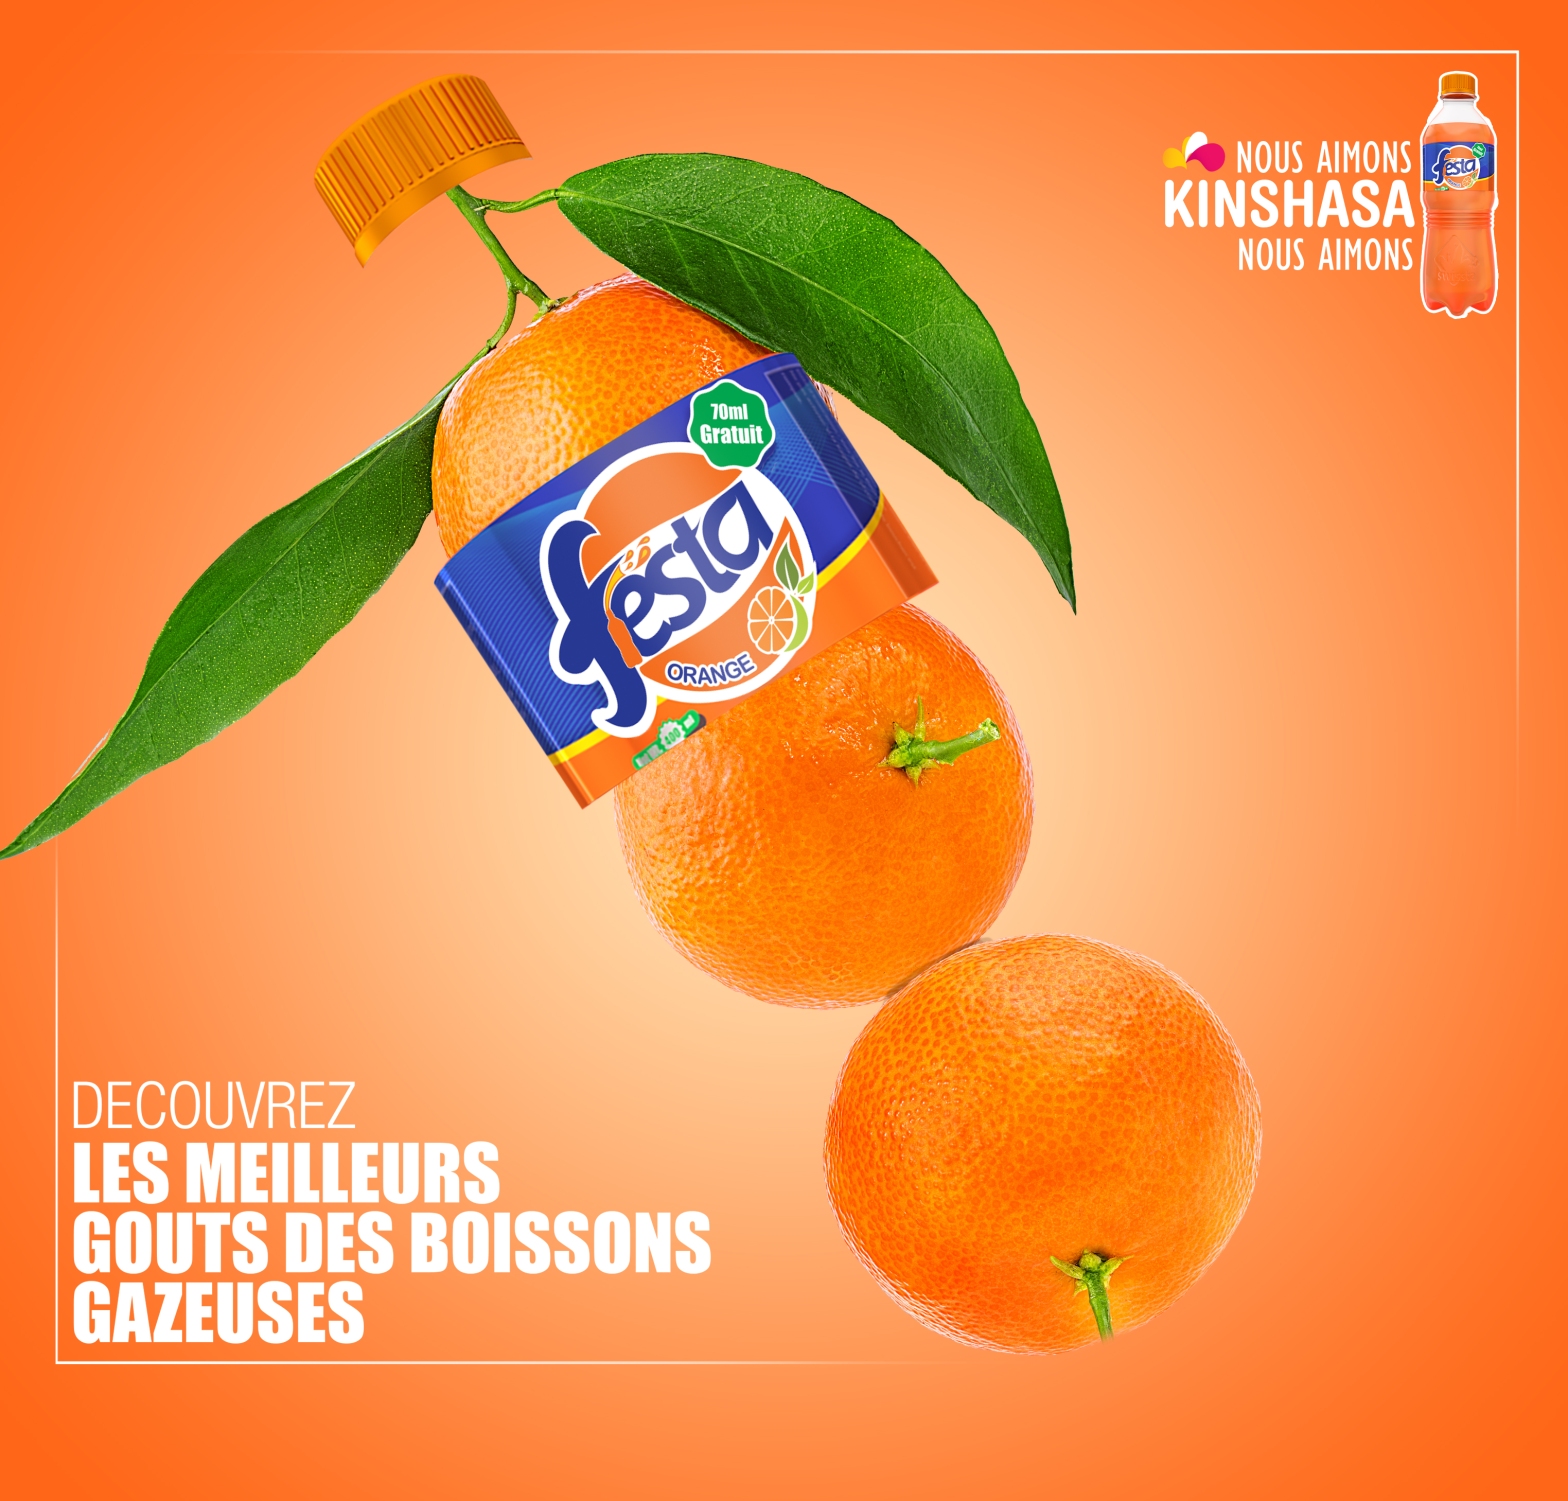 Festa Orange flavour soft drink brands in Kinshasa, DRC, Africa